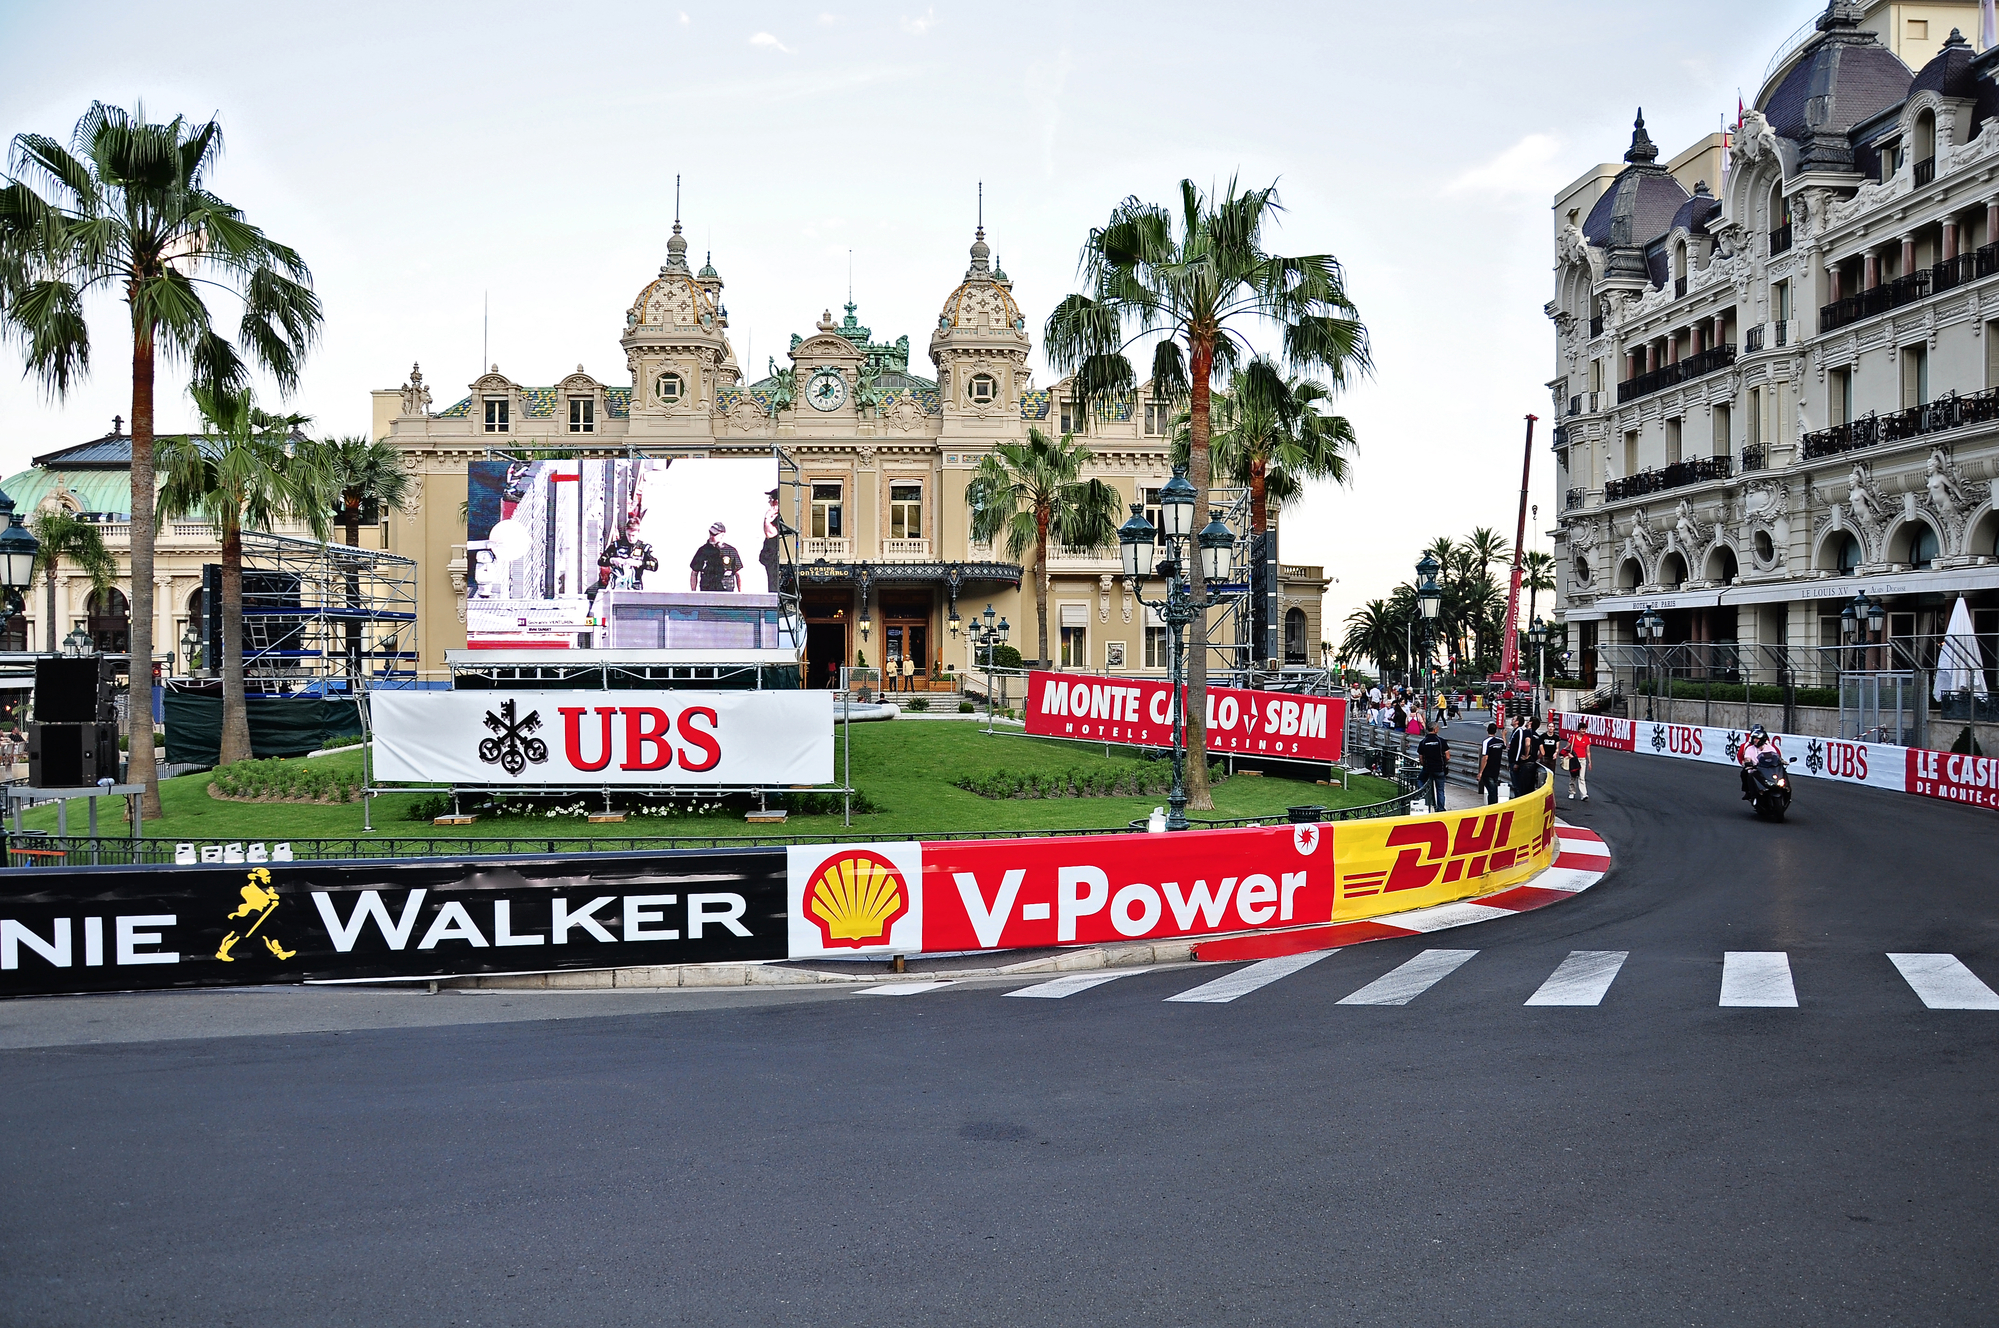 Monaco Grand Prix Formula 1